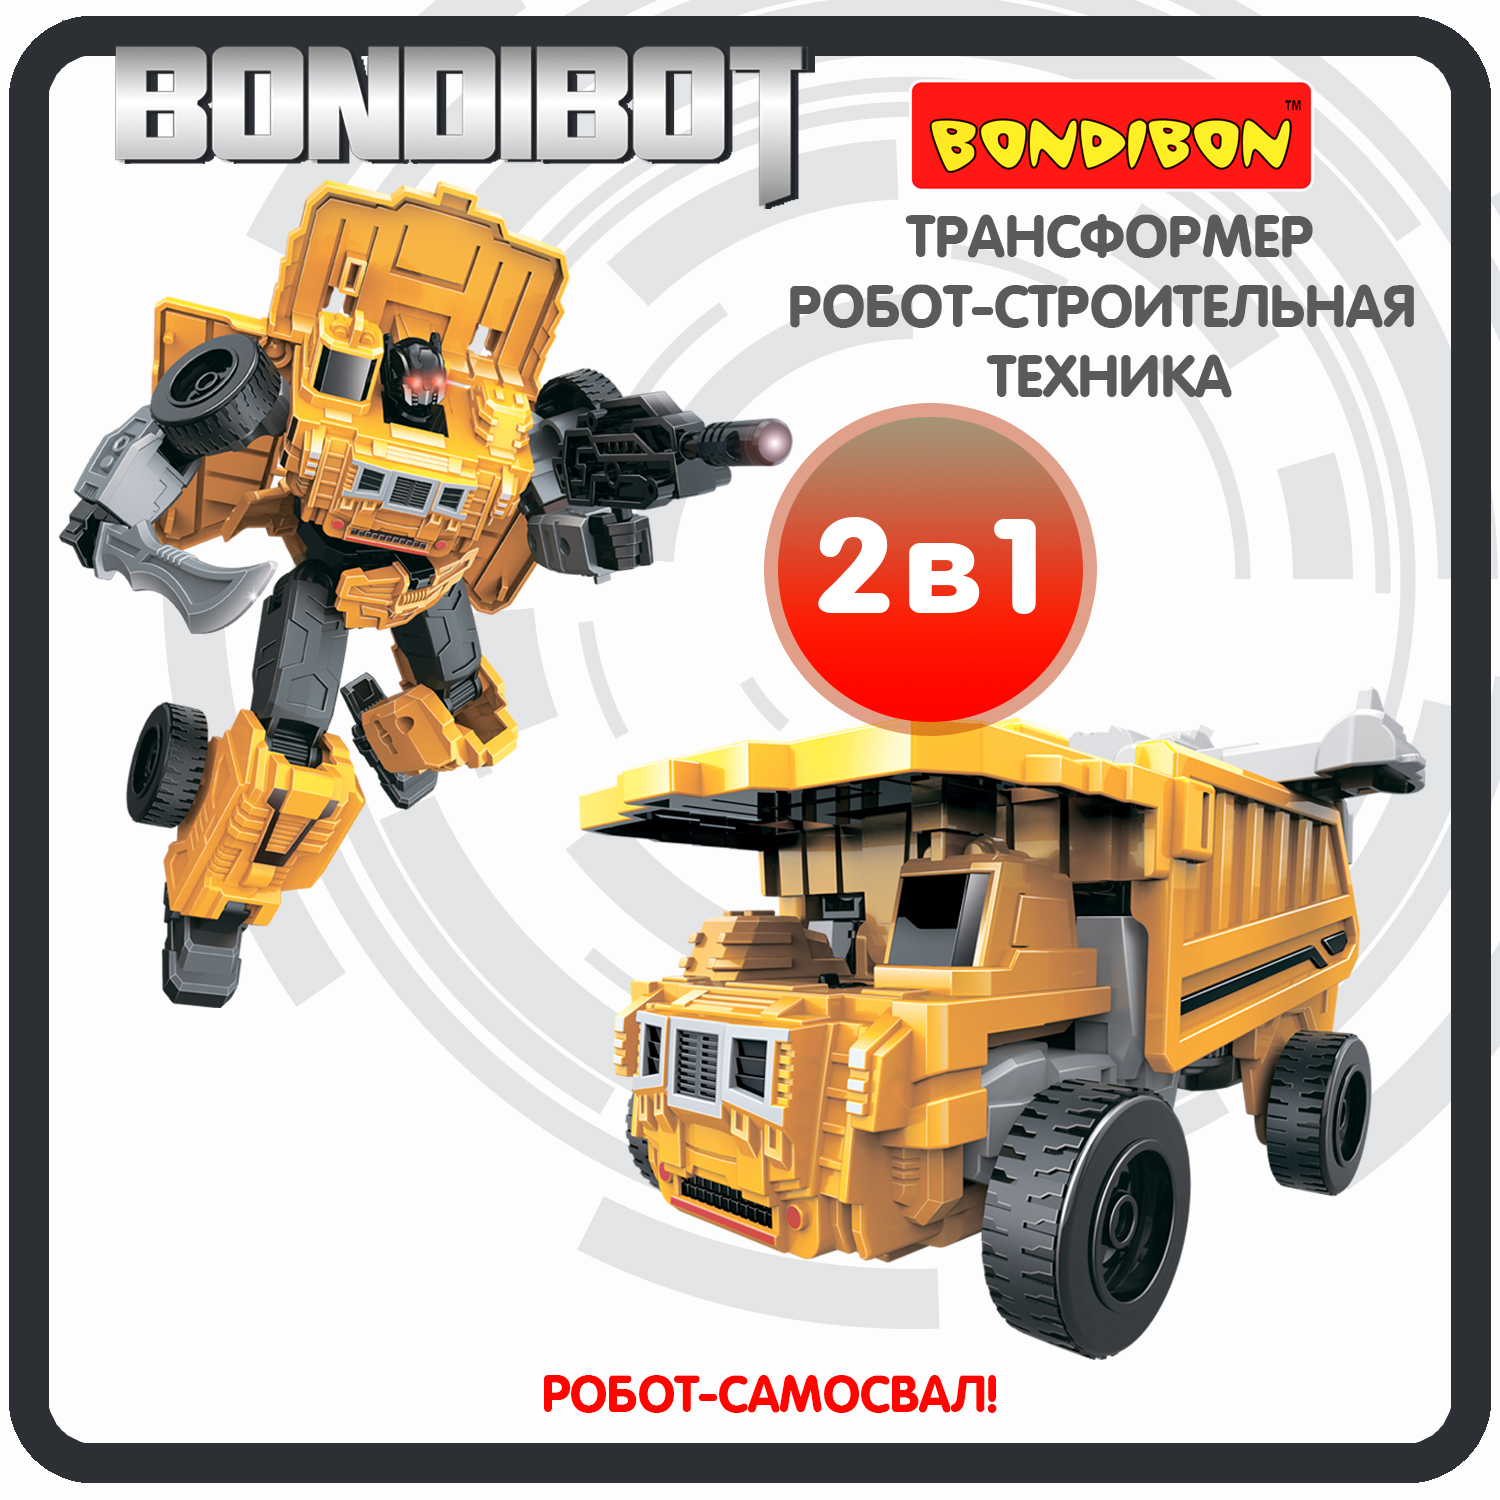 Трансформер робот-строительная техника, 2в1 BONDIBOT Bondibon, самосвал / ВВ6046 трансформер робот строительная техника 2в1 bondibot bondibon самосвал вв6046